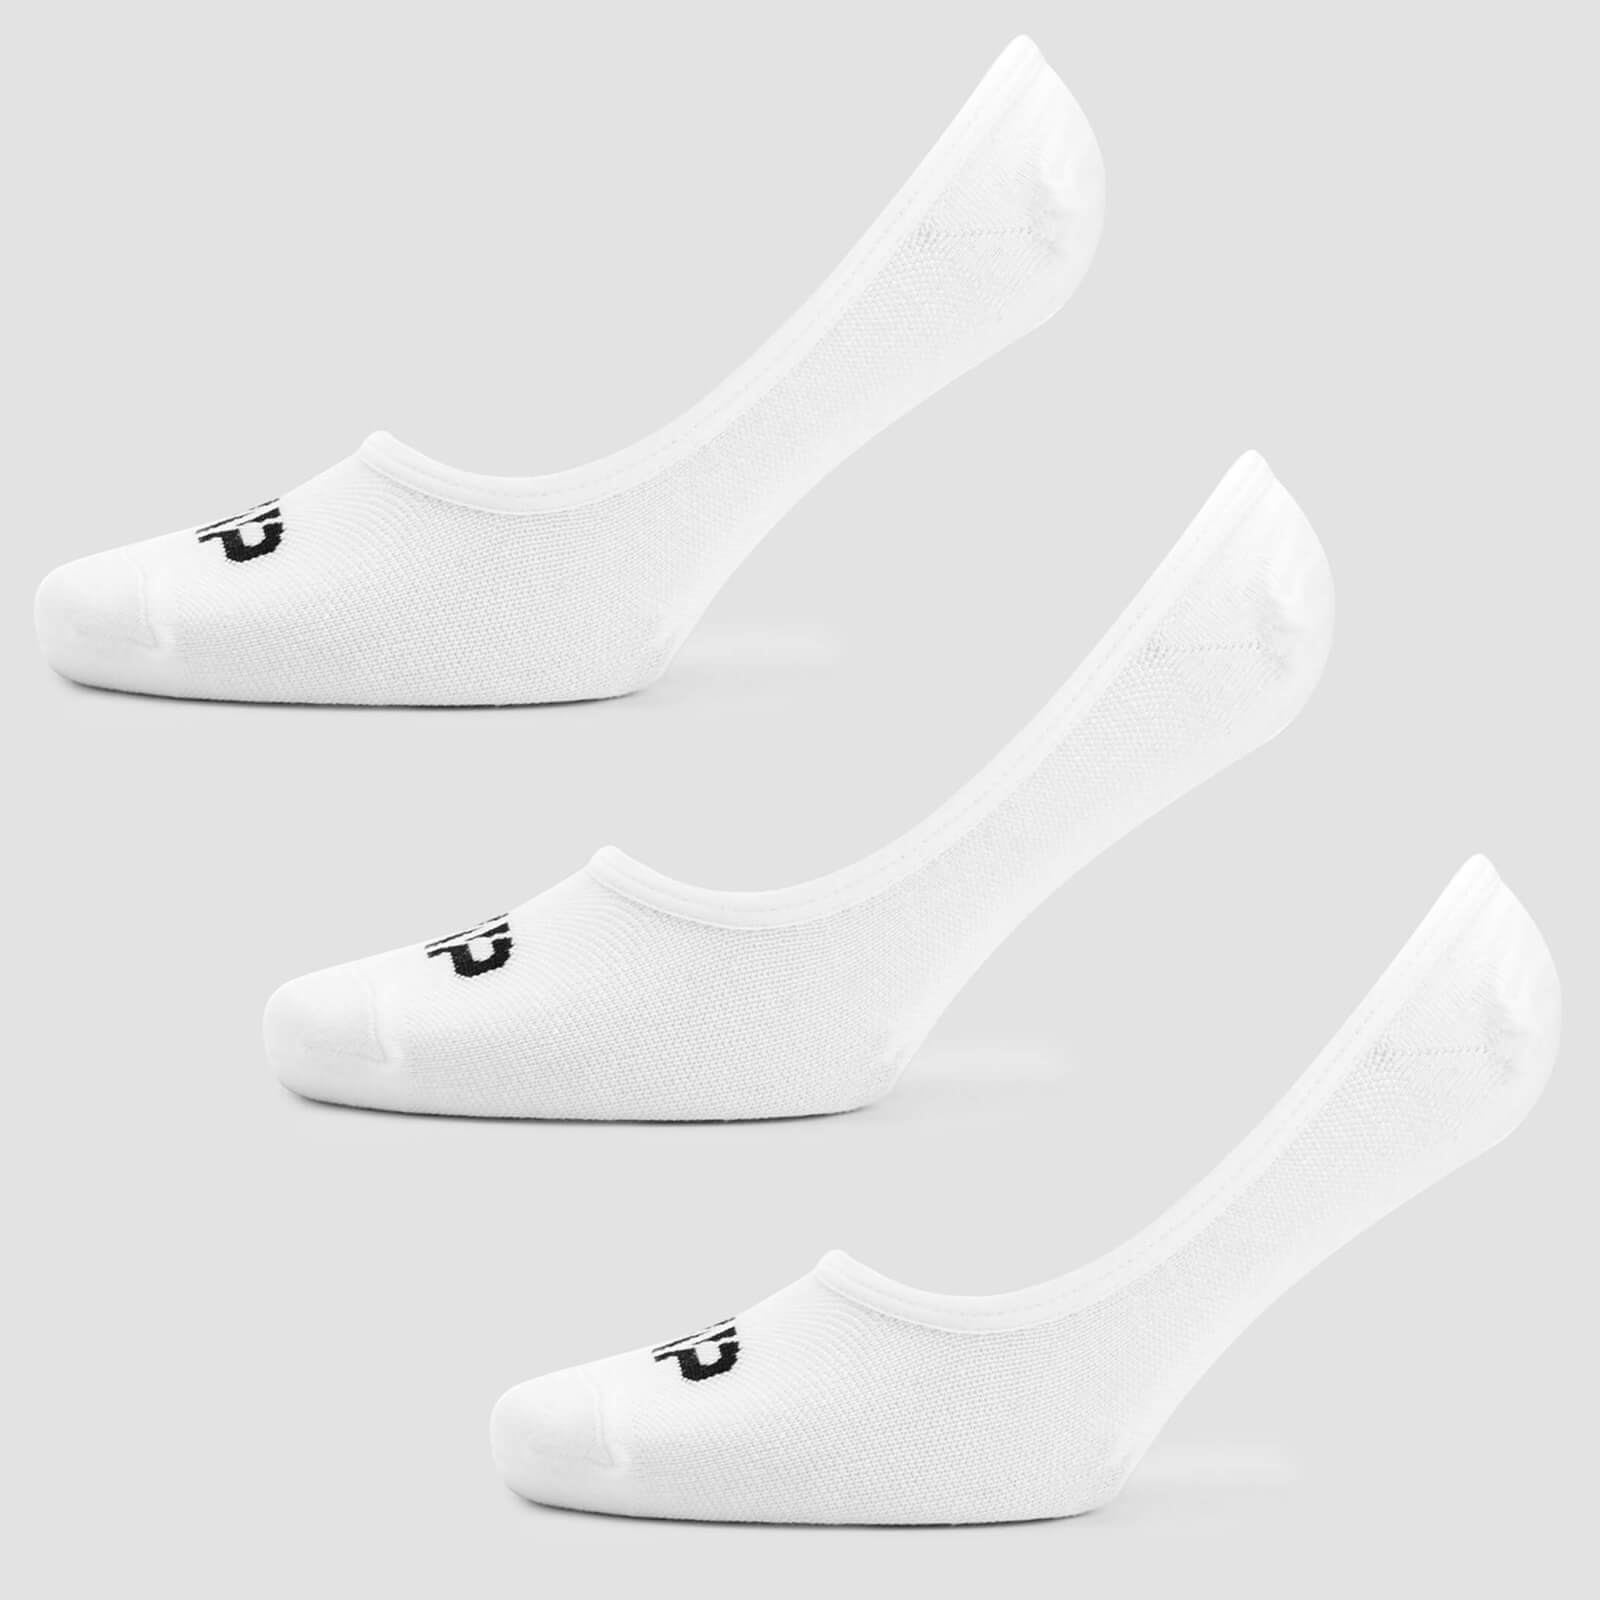 Ženske nevidljive čarape - Bijele (3 para) - UK 3-6